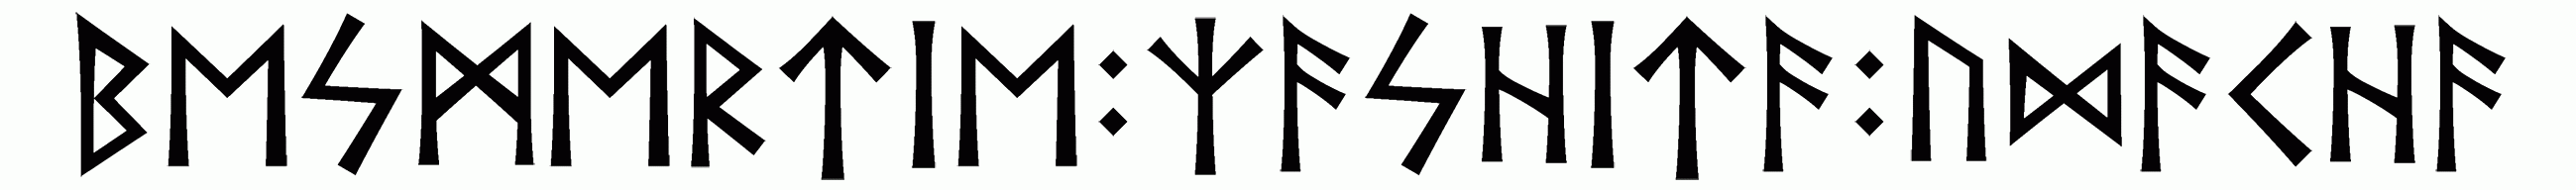 besmertie+zashita+udacha - Напиши имя  БЕСМЕРТИЕ+ЗАШИТА+УДАЧА рунами  - ᛒᛖᛋᛗᛖᚱᛏᛁᛖ:ᛉᚨᛋᚺᛁᛏᚨ:ᚢᛞᚨᛏᚺᚨ - Значение и характер имени  БЕСМЕРТИЕ+ЗАШИТА+УДАЧА - 